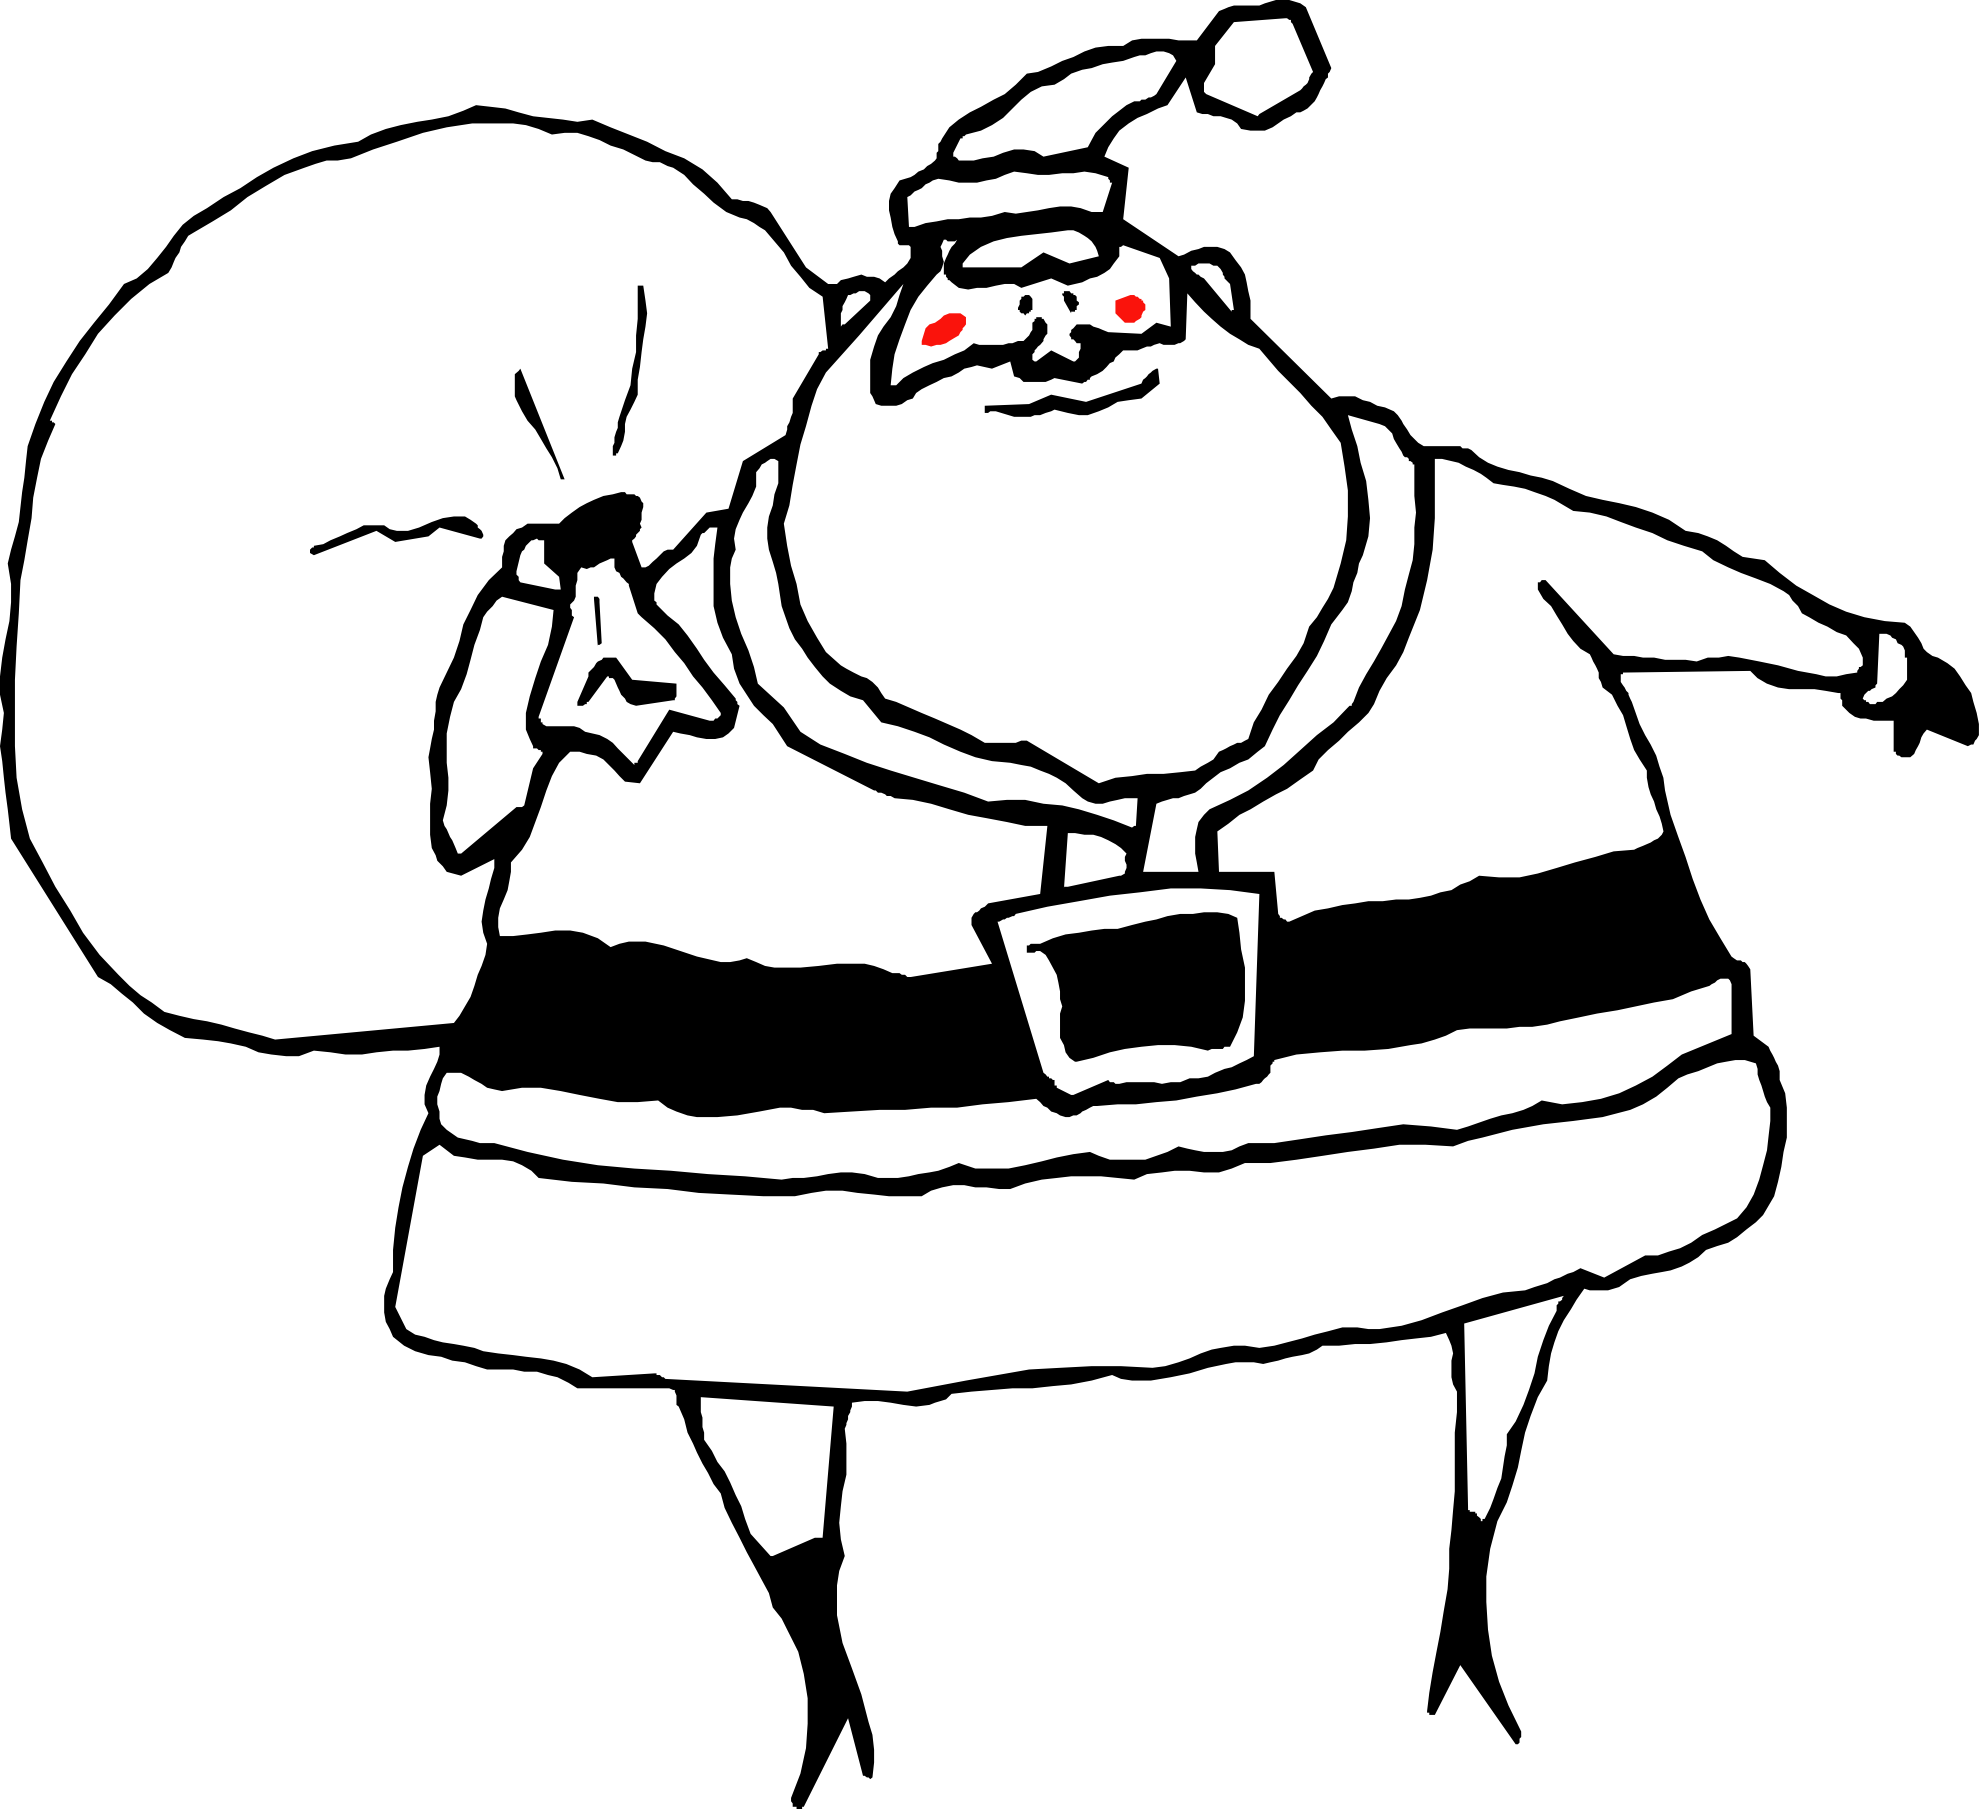 Free Santa Drawing Cliparts Download Free Clip Art Free Clip Art On Clipart Library